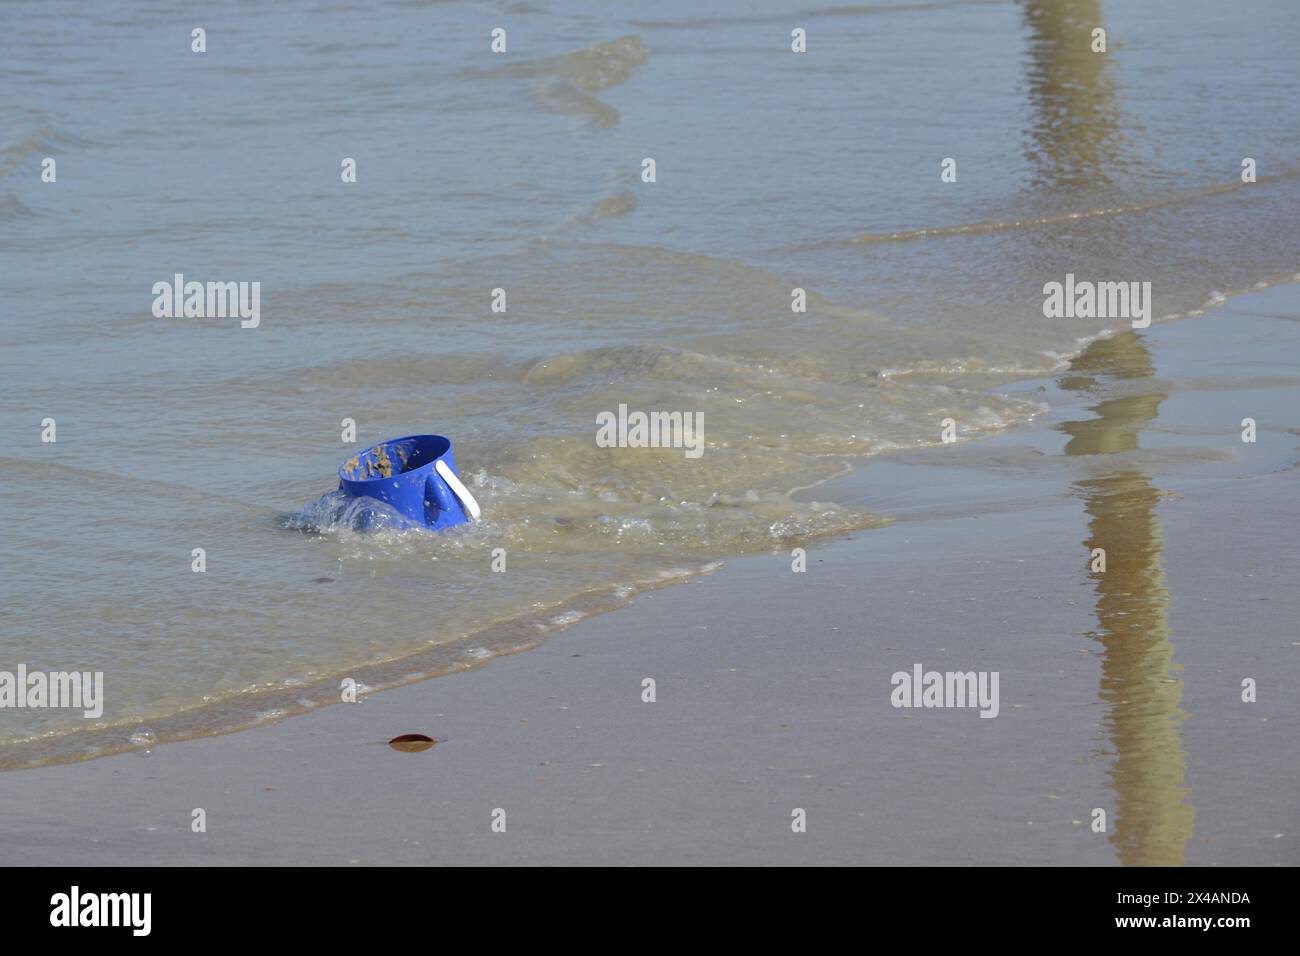 Un seau bleu abandonné se trouve aux trois quarts enfoui dans le sable près du bord de l'océan, où les vagues entrantes créent des reflets sur la plage de sable. Banque D'Images